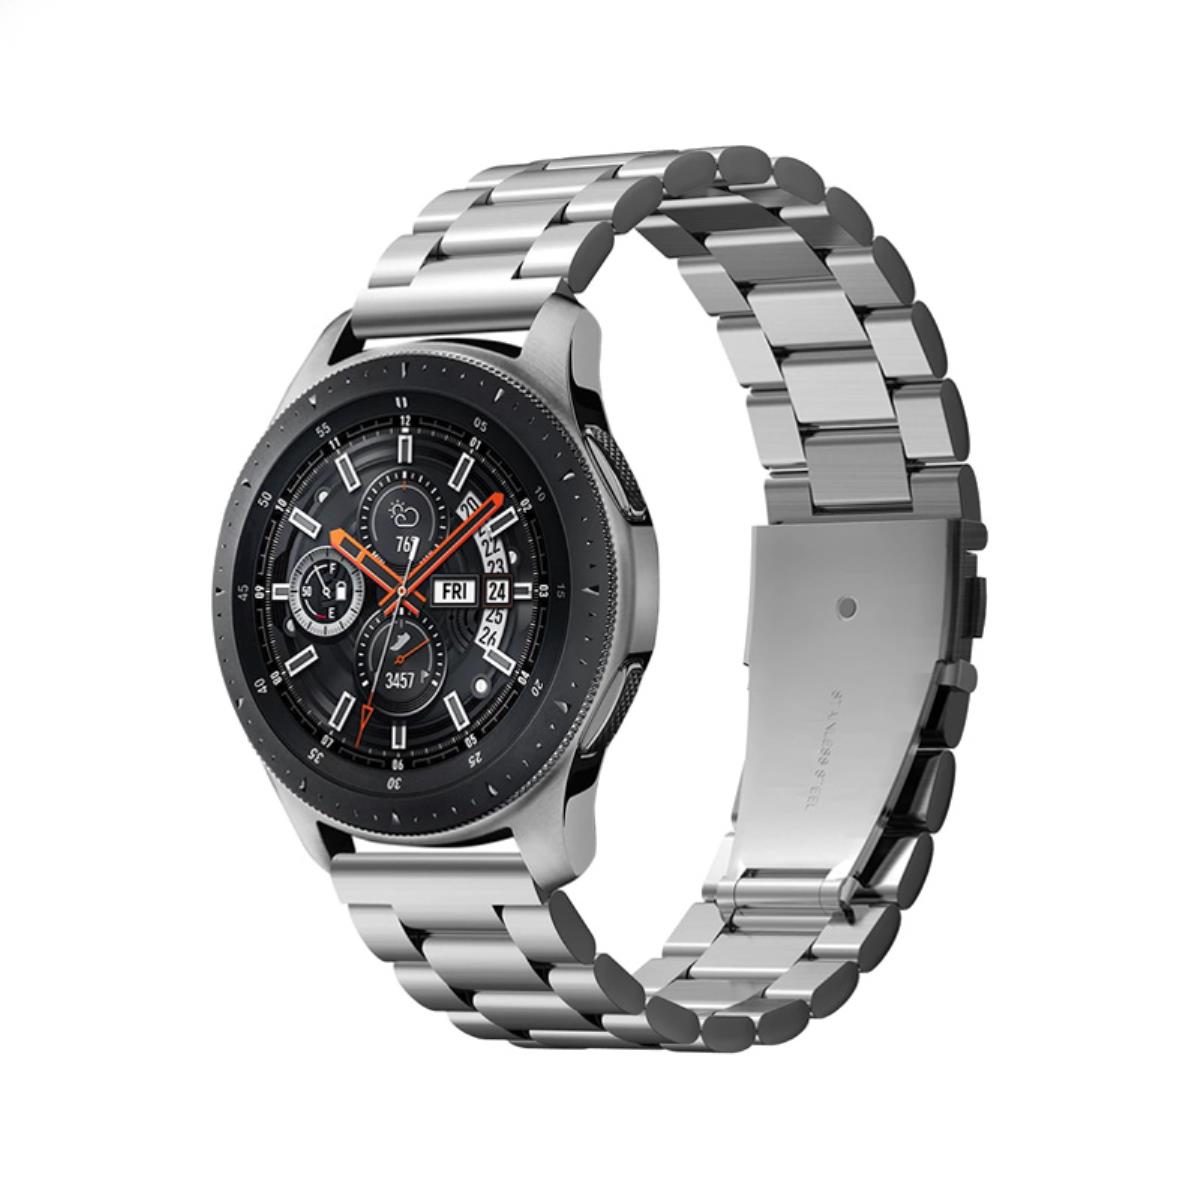 Samsung Galaxy watch 46mm Silver r800. Samsung Galaxy watch4 46mm Silver (SM-r890n). Samsung Gear watch 46mm. Samsung galaxy watch r800